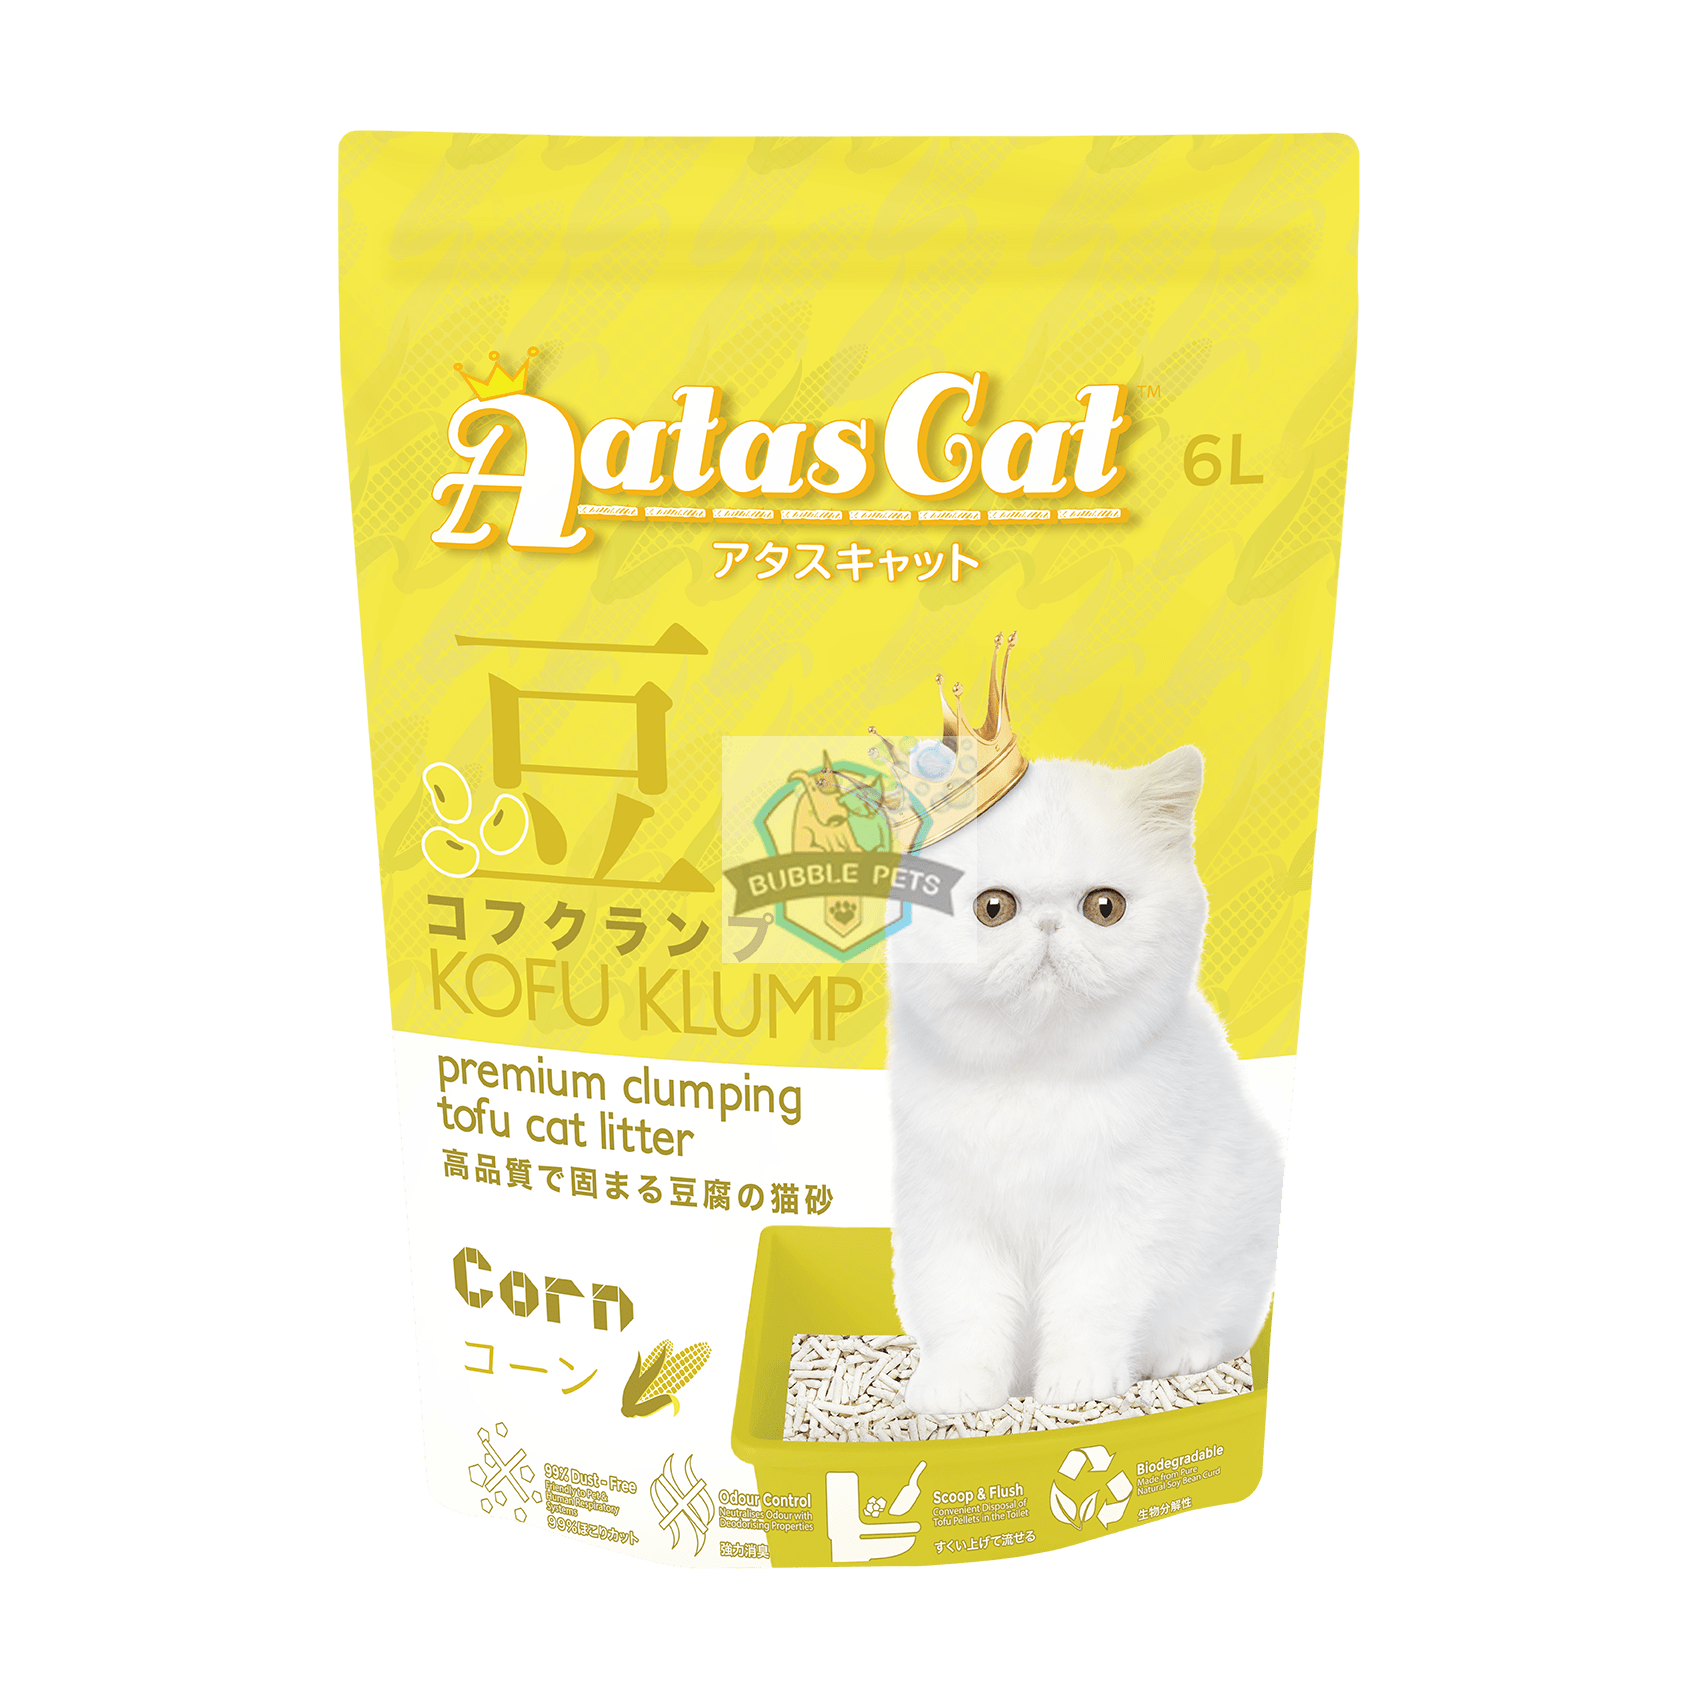 Aatas Cat Kofu Klump Tofu Cat Litter Corn 6L